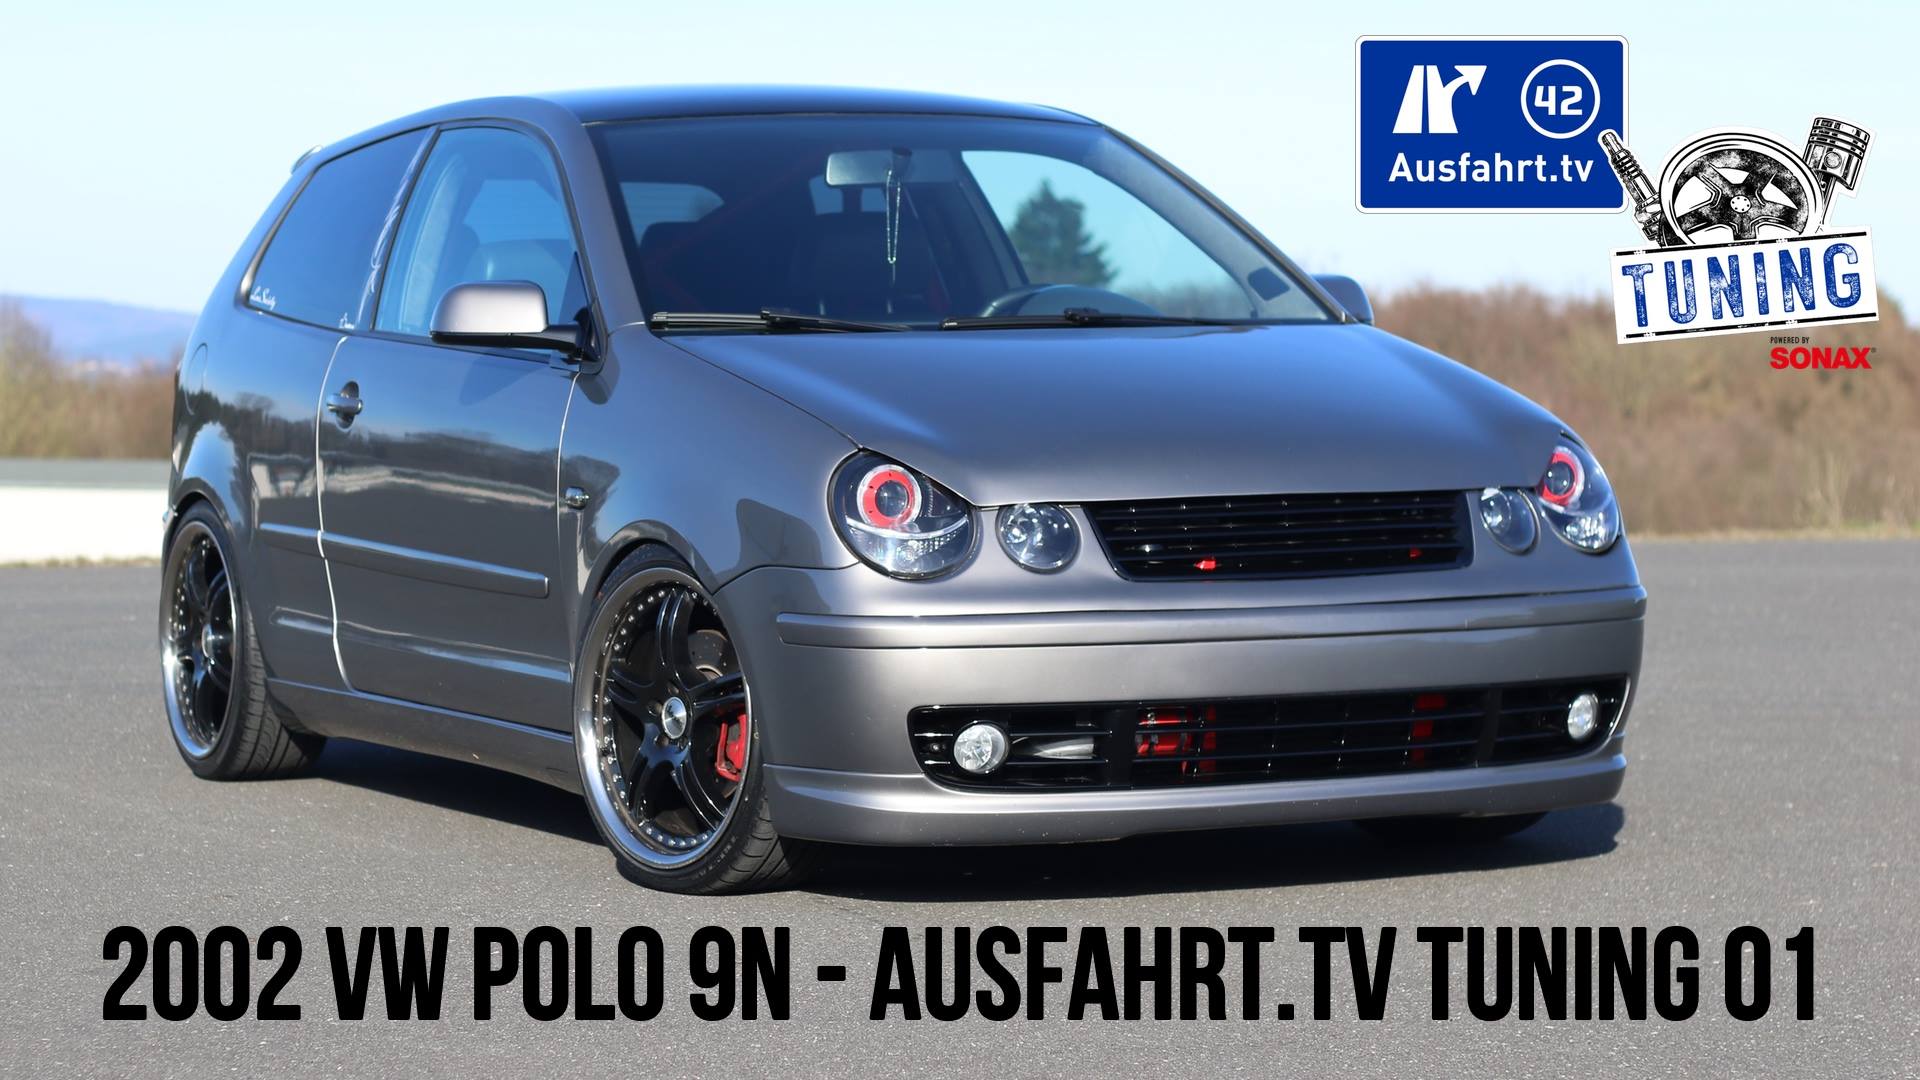 Ausfahrt.TV Tuning - Folge 1 - Der VW Polo 9N von Daniel aus